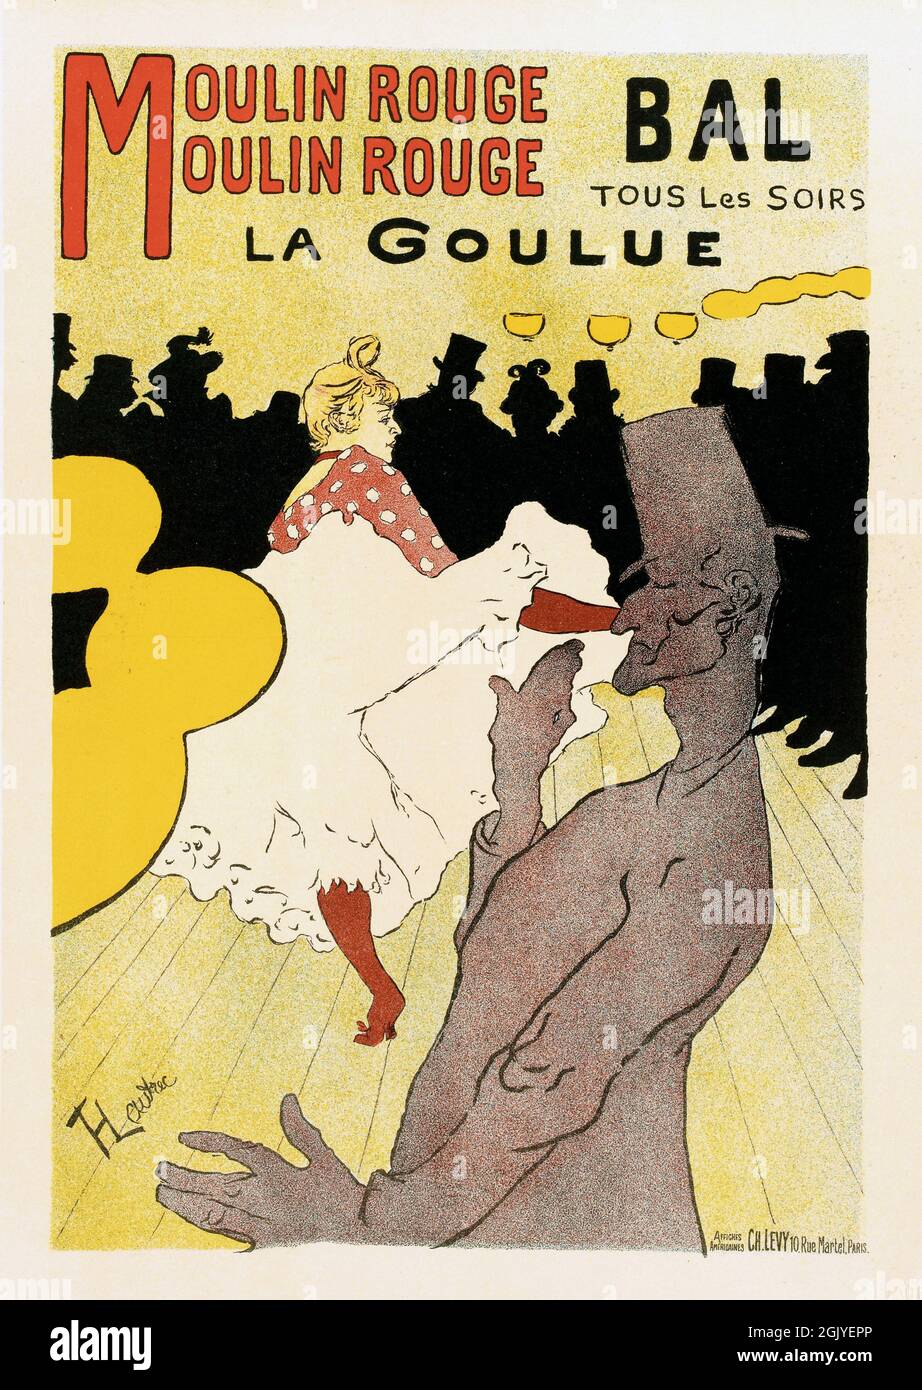 Vintage Poster advertising dancing and balls at Moulin Rouge, Bal tous les soirs La Goulue Moulin Rouge by Henri de Toulouse-Lautrec, 1891. Stock Photo